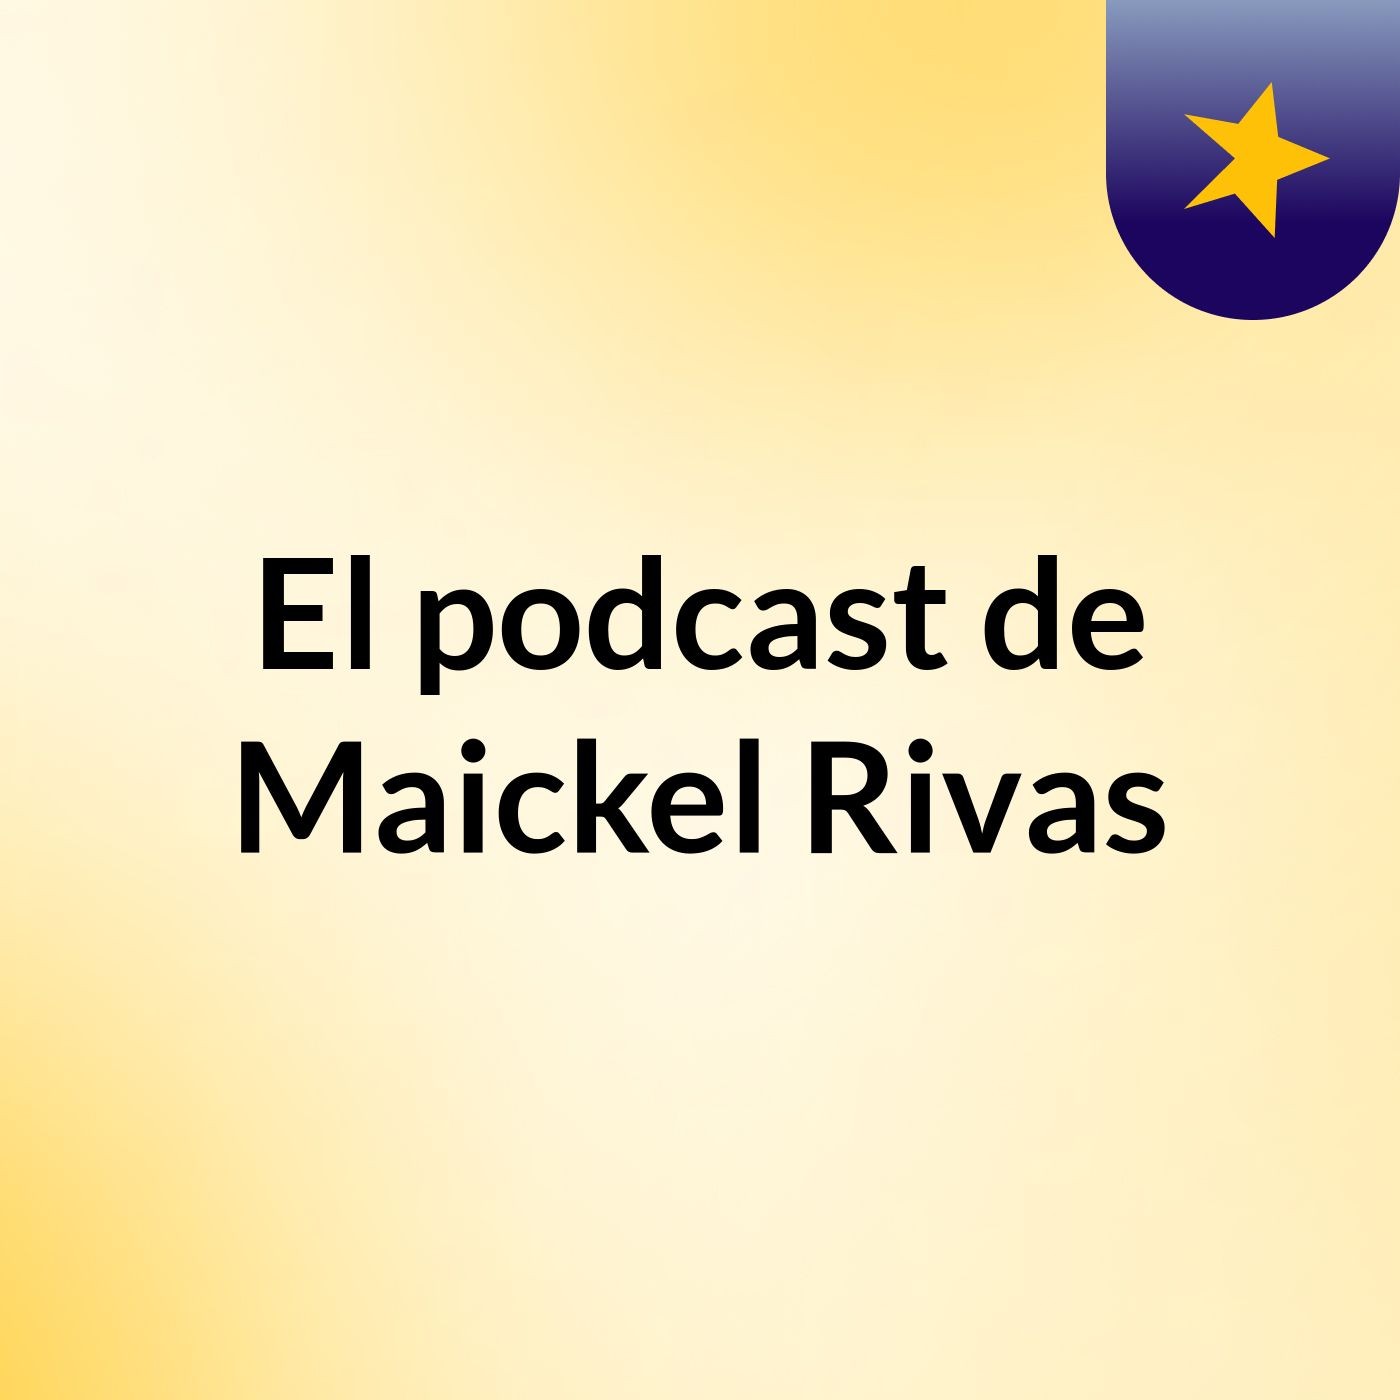 El podcast de Maickel Rivas